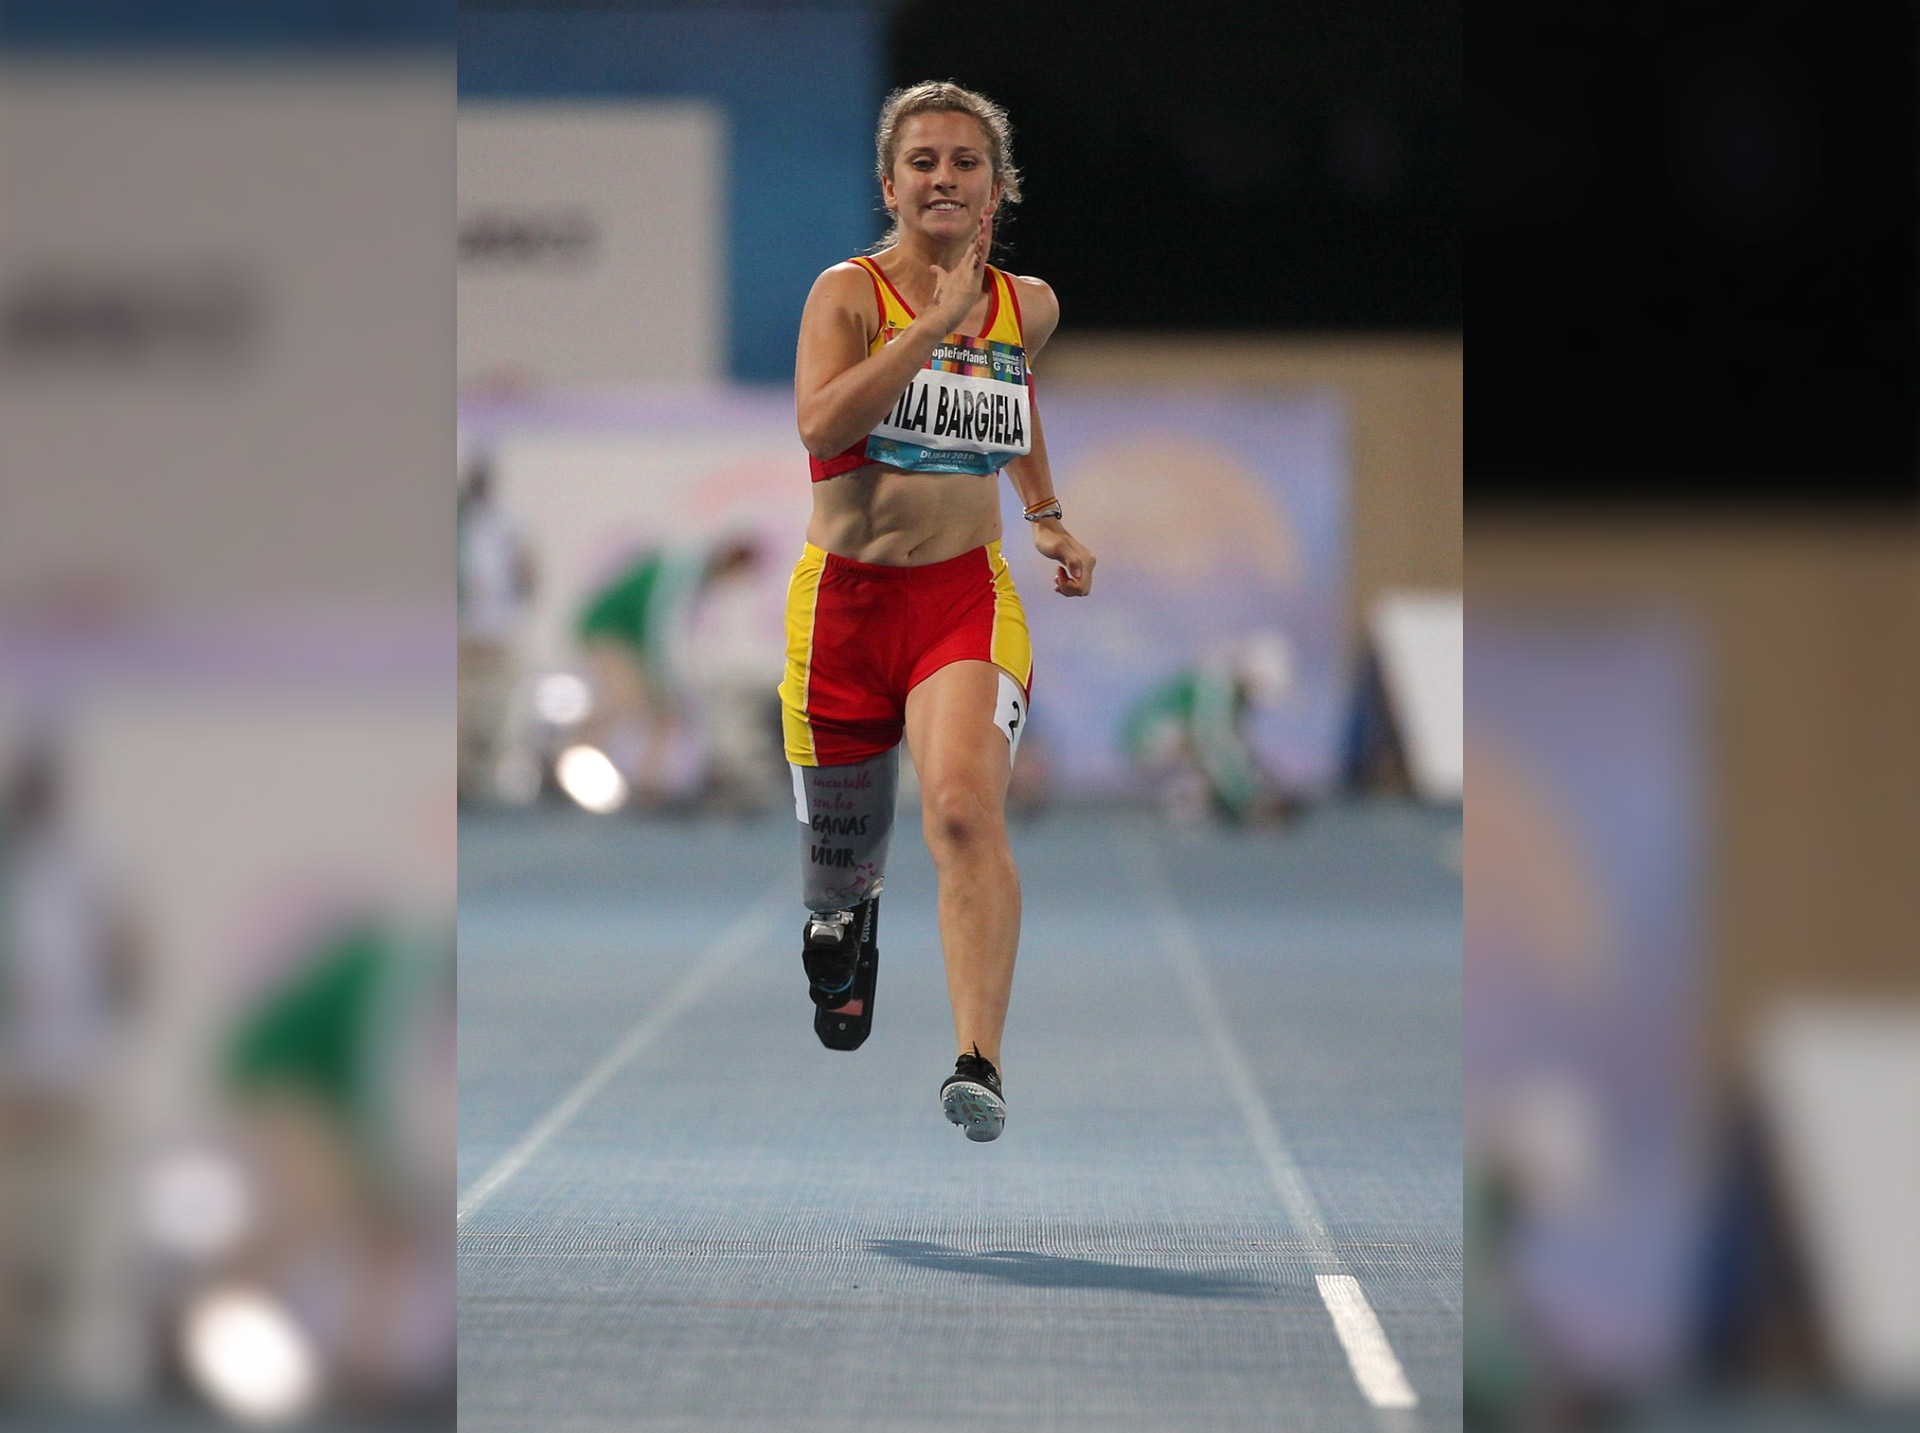 Desirée Vila, se ha clasificado para los Juegos Paralímpicos de Tokio después de superar varias adversidades a lo largo de su vida